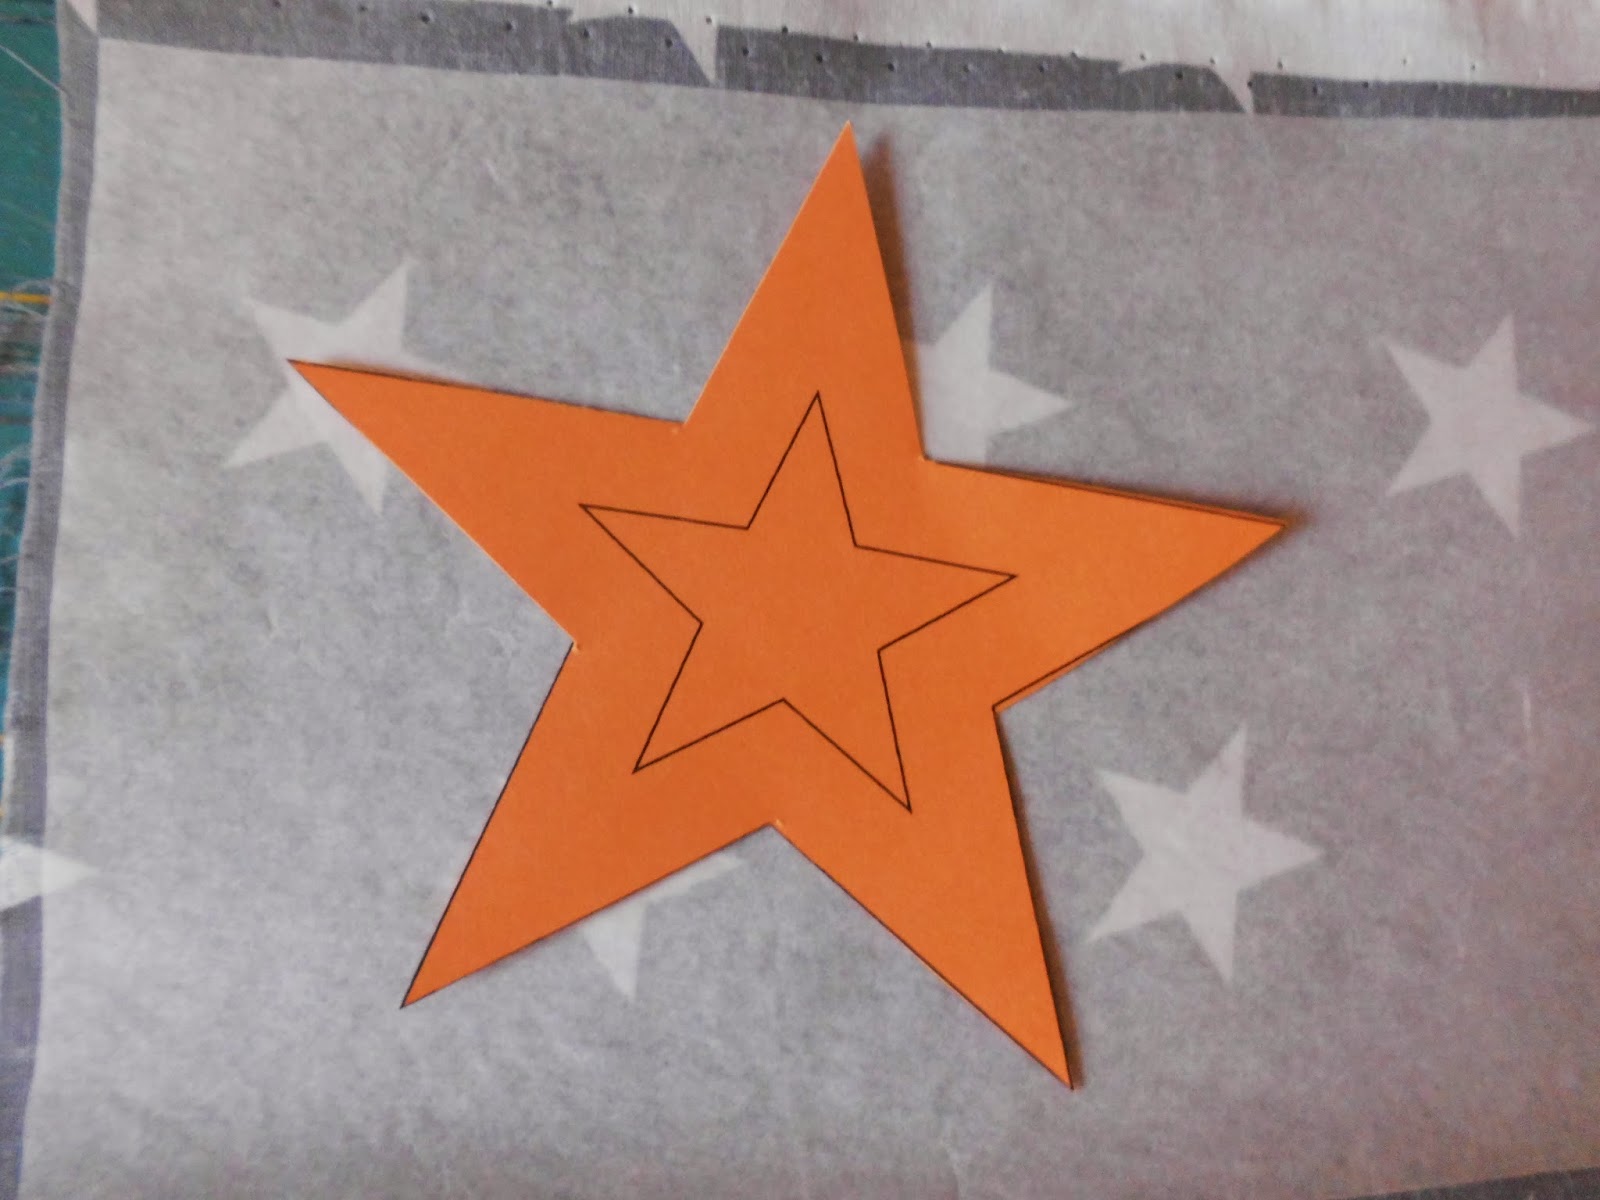 Schaeresteipapier 3x3 Sterne Mit Nadel Filzen